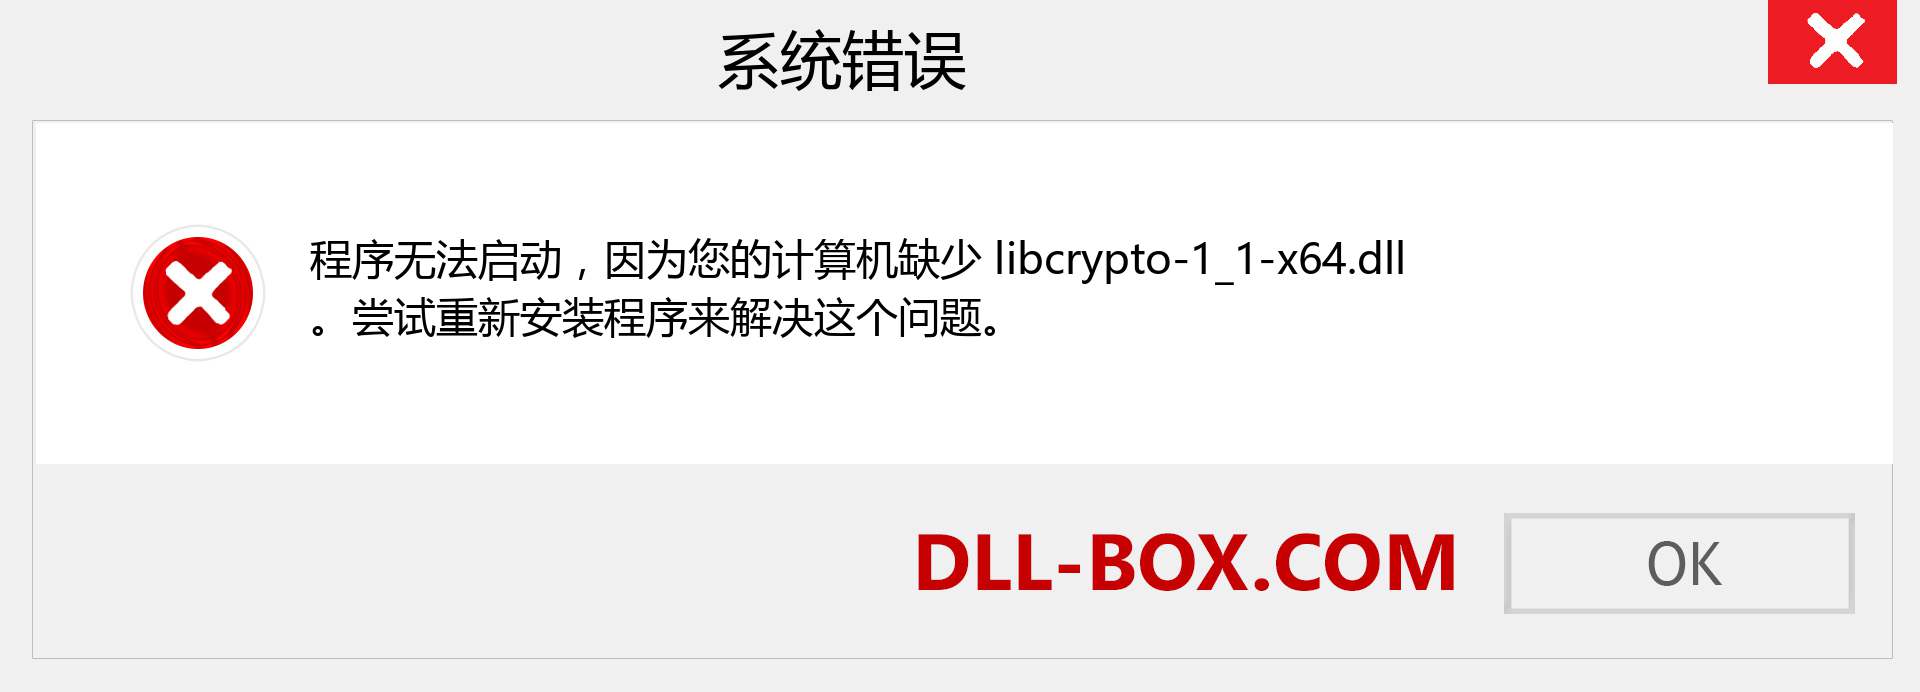 libcrypto-1_1-x64.dll 文件丢失？。 适用于 Windows 7、8、10 的下载 - 修复 Windows、照片、图像上的 libcrypto-1_1-x64 dll 丢失错误